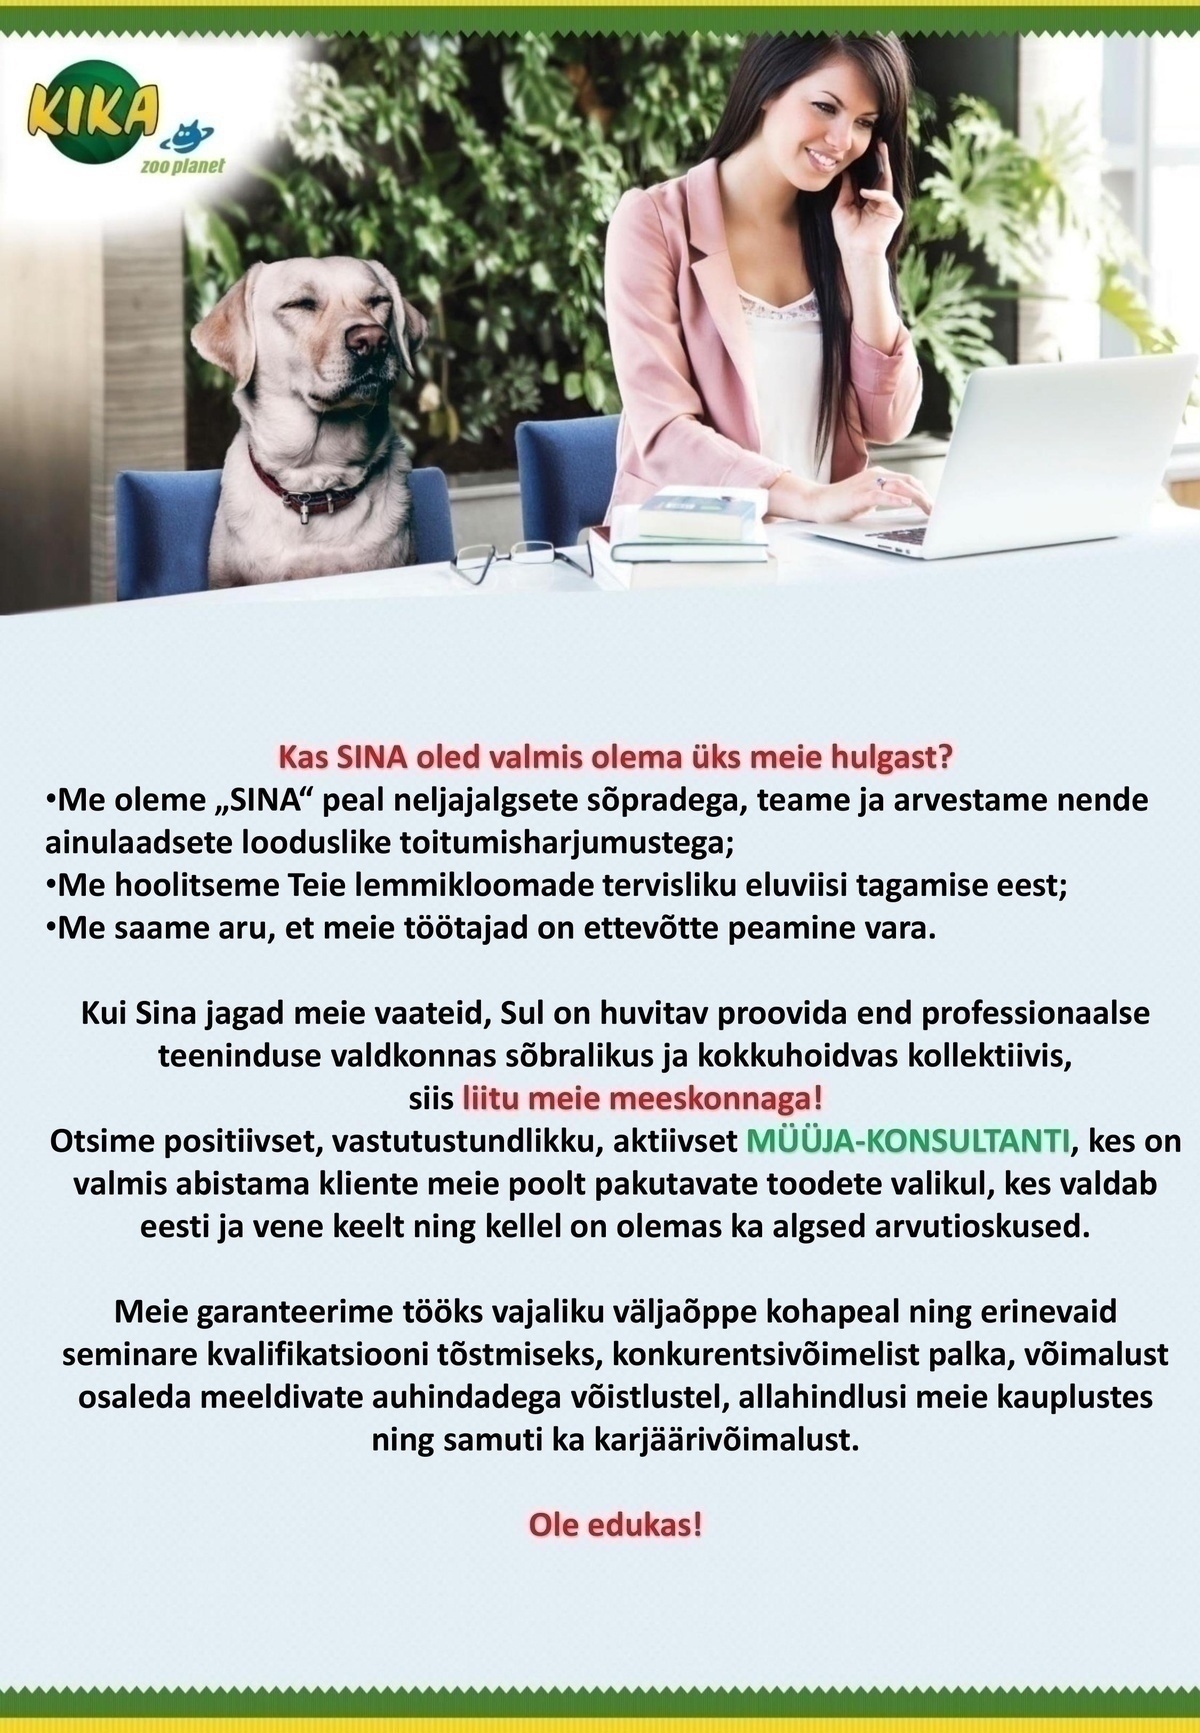 ZOO PLANET OÜ Müüja-konsultant (Tallinn)